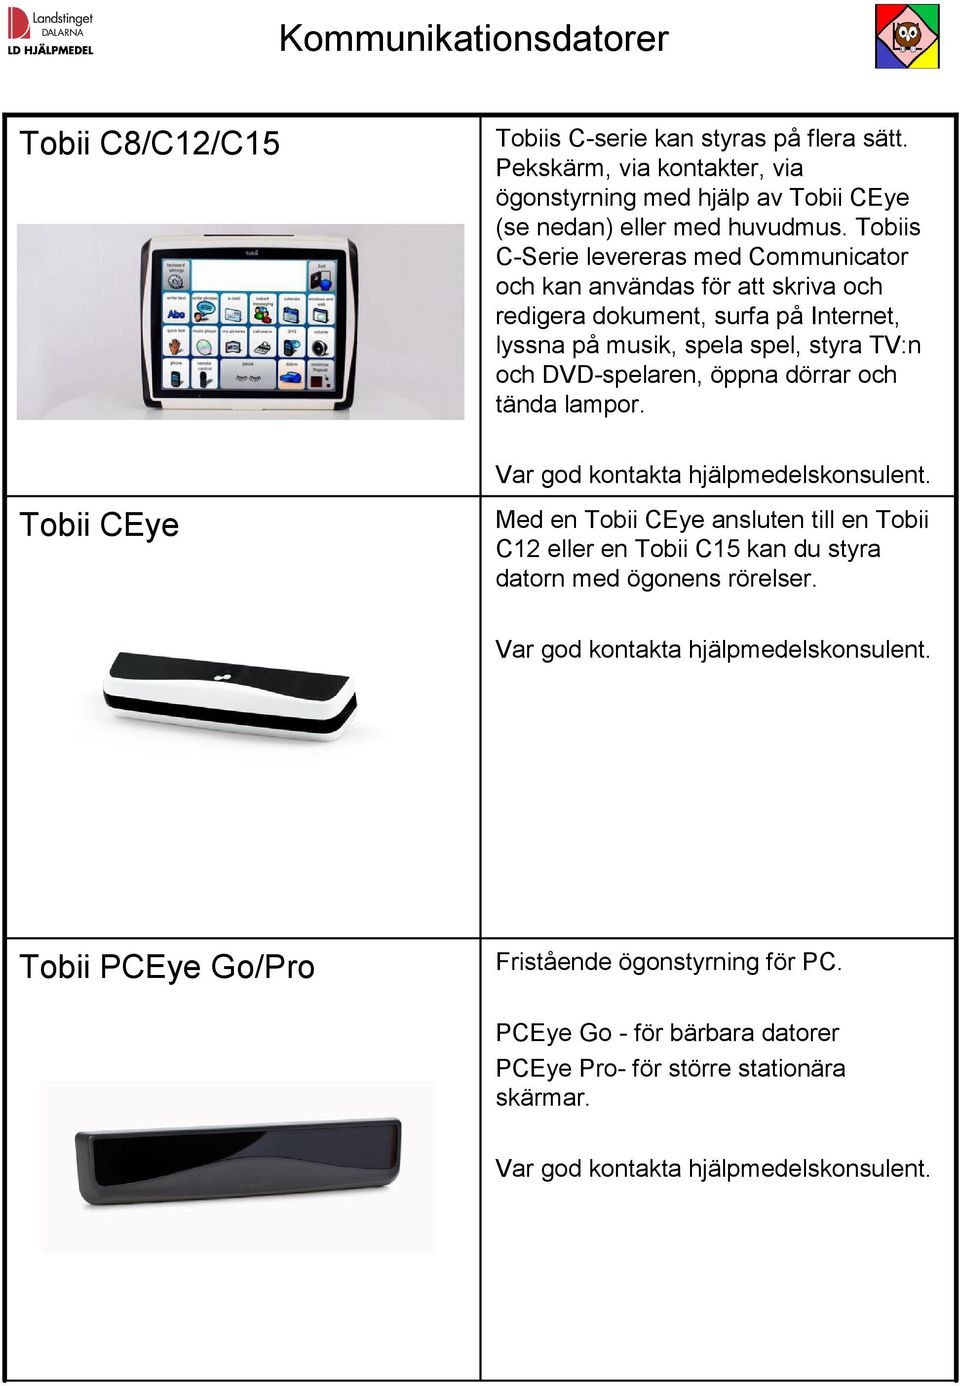 Tobiis C-Serie levereras med Communicator och kan användas för att skriva och redigera dokument, surfa på Internet, lyssna på musik, spela spel, styra TV:n